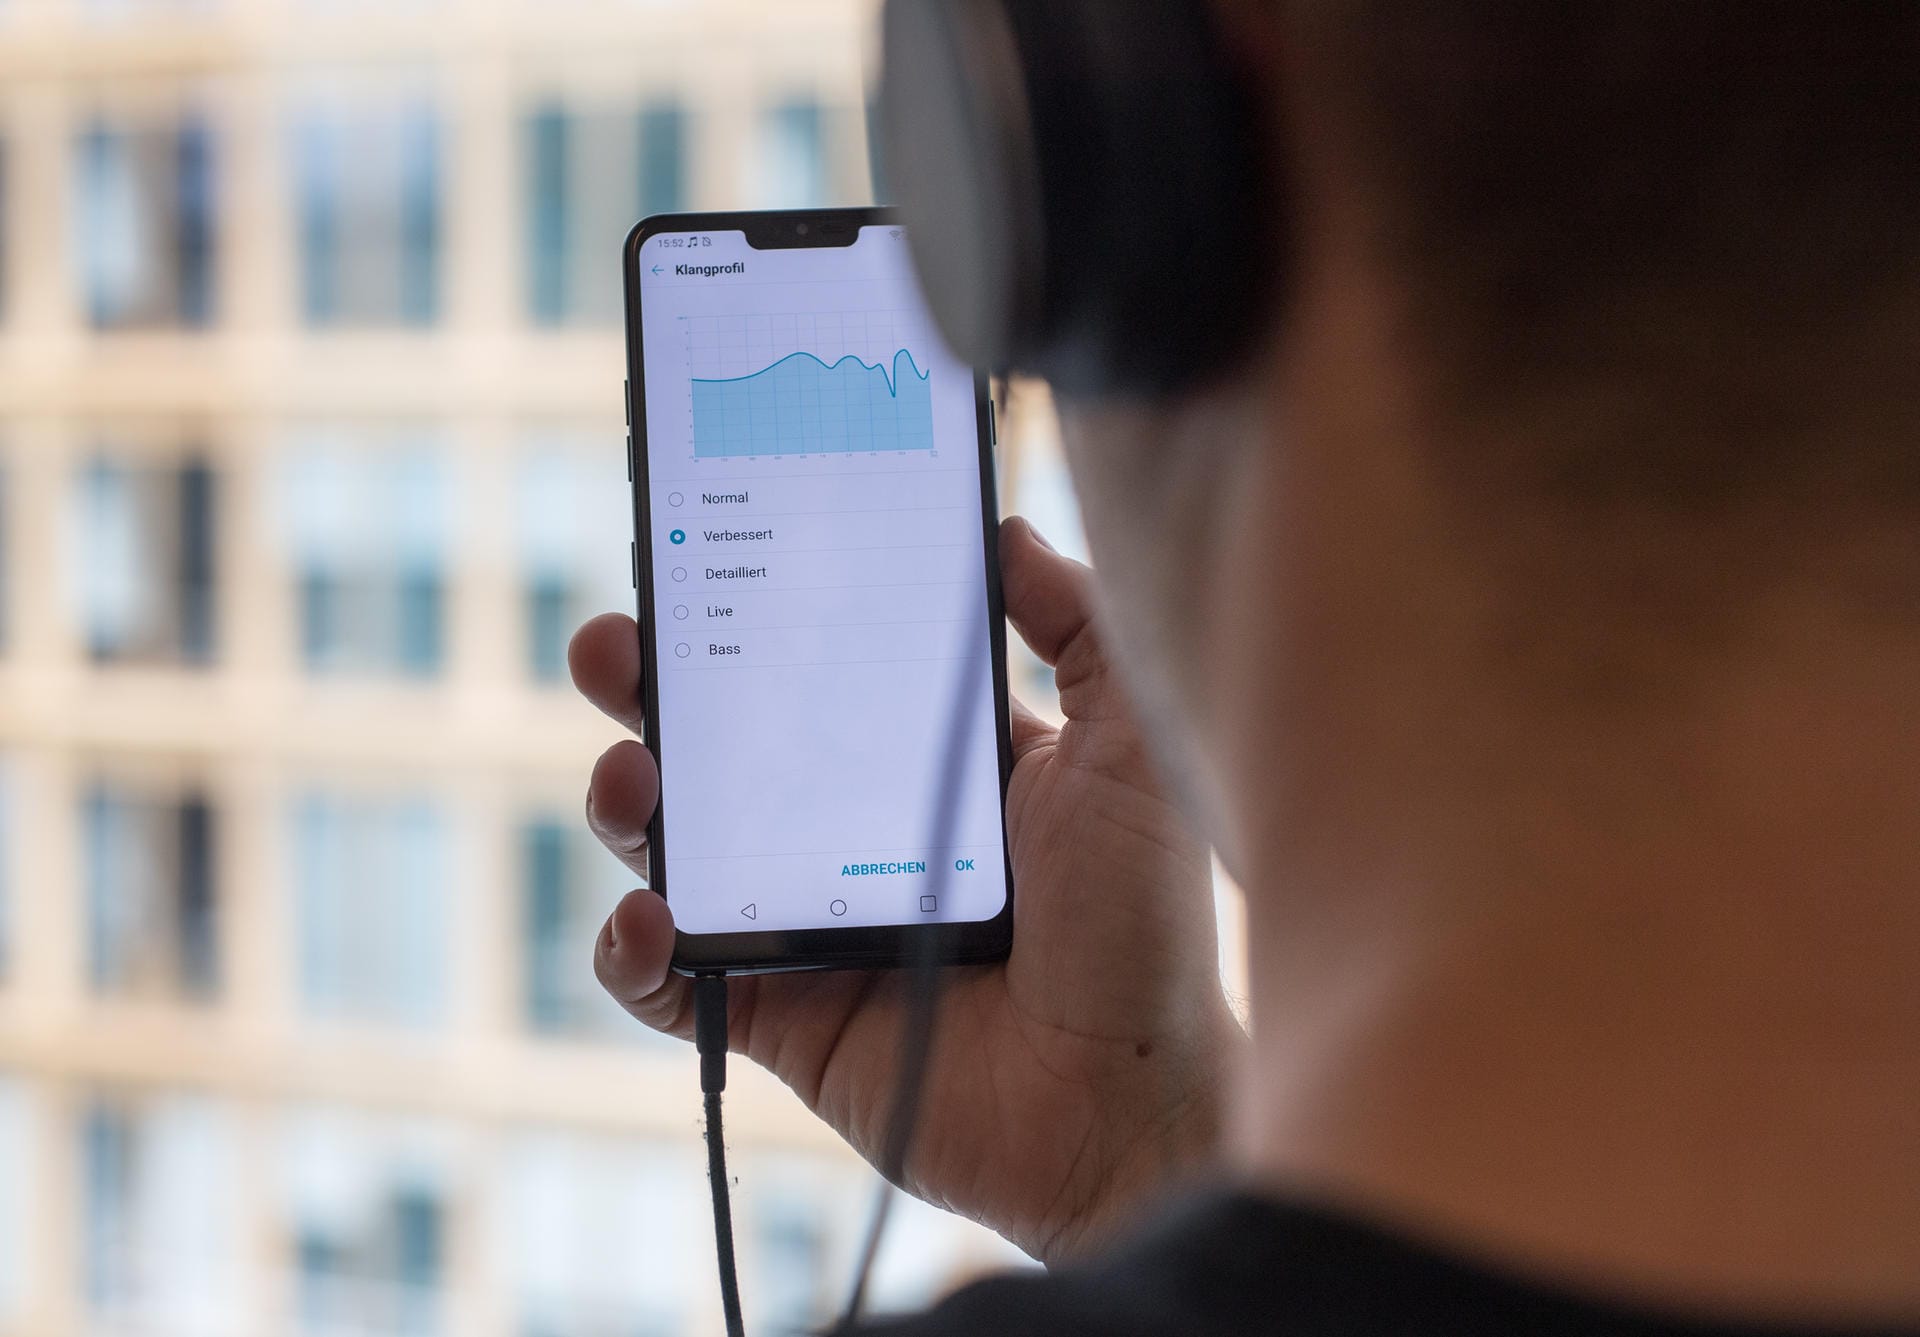 Der Quad-DAC des LG G7 ThinQ soll das Smartphone auch zum Hi-Fi-Abspielgerät machen. Seine Software erlaubt zahlreiche Tonanpassungen.